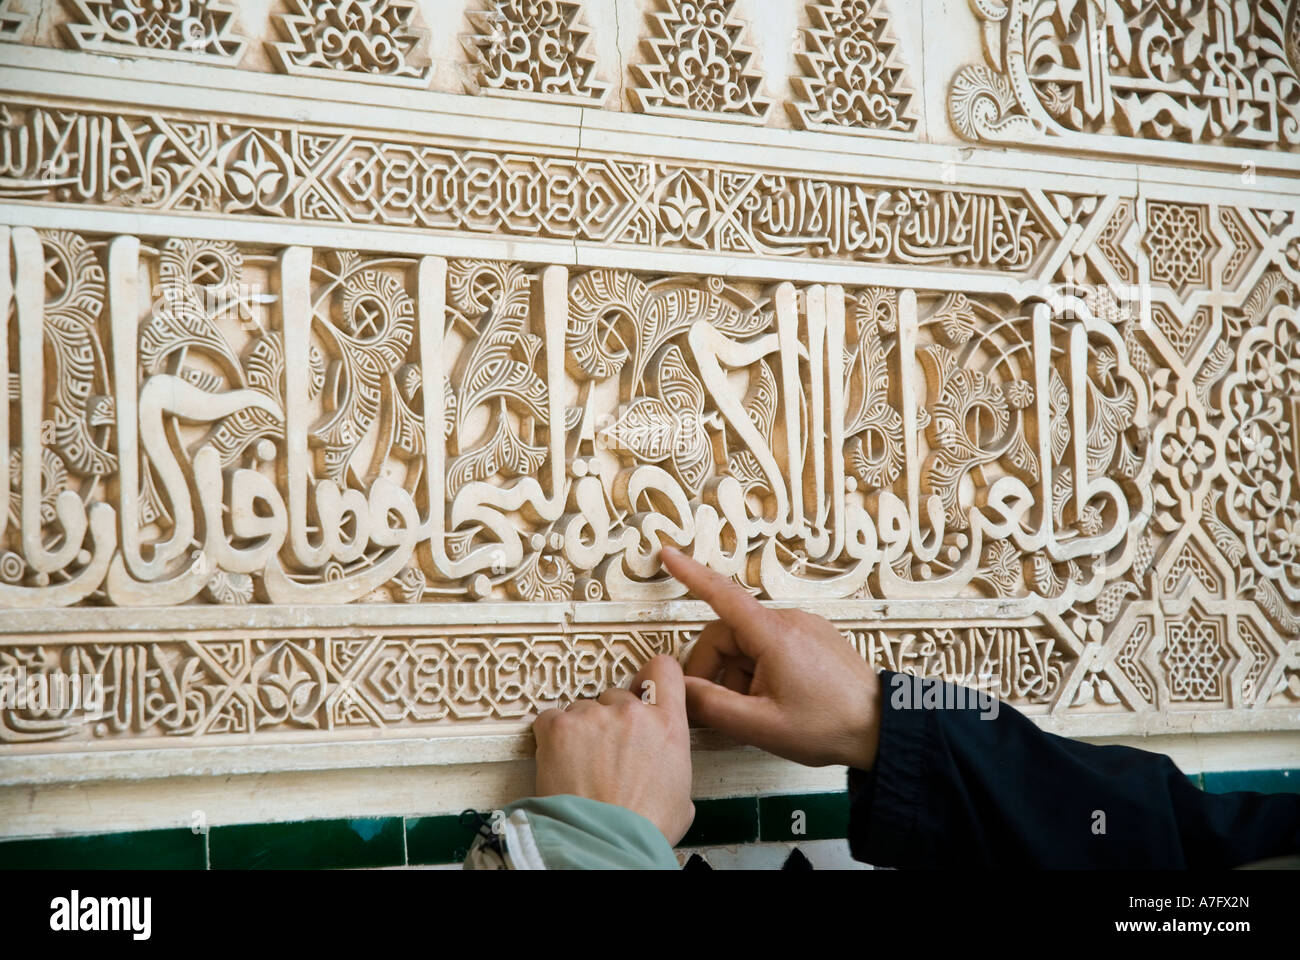 Écriture arabe sur le mur de la Alhambra Grenade Espagne Banque D'Images